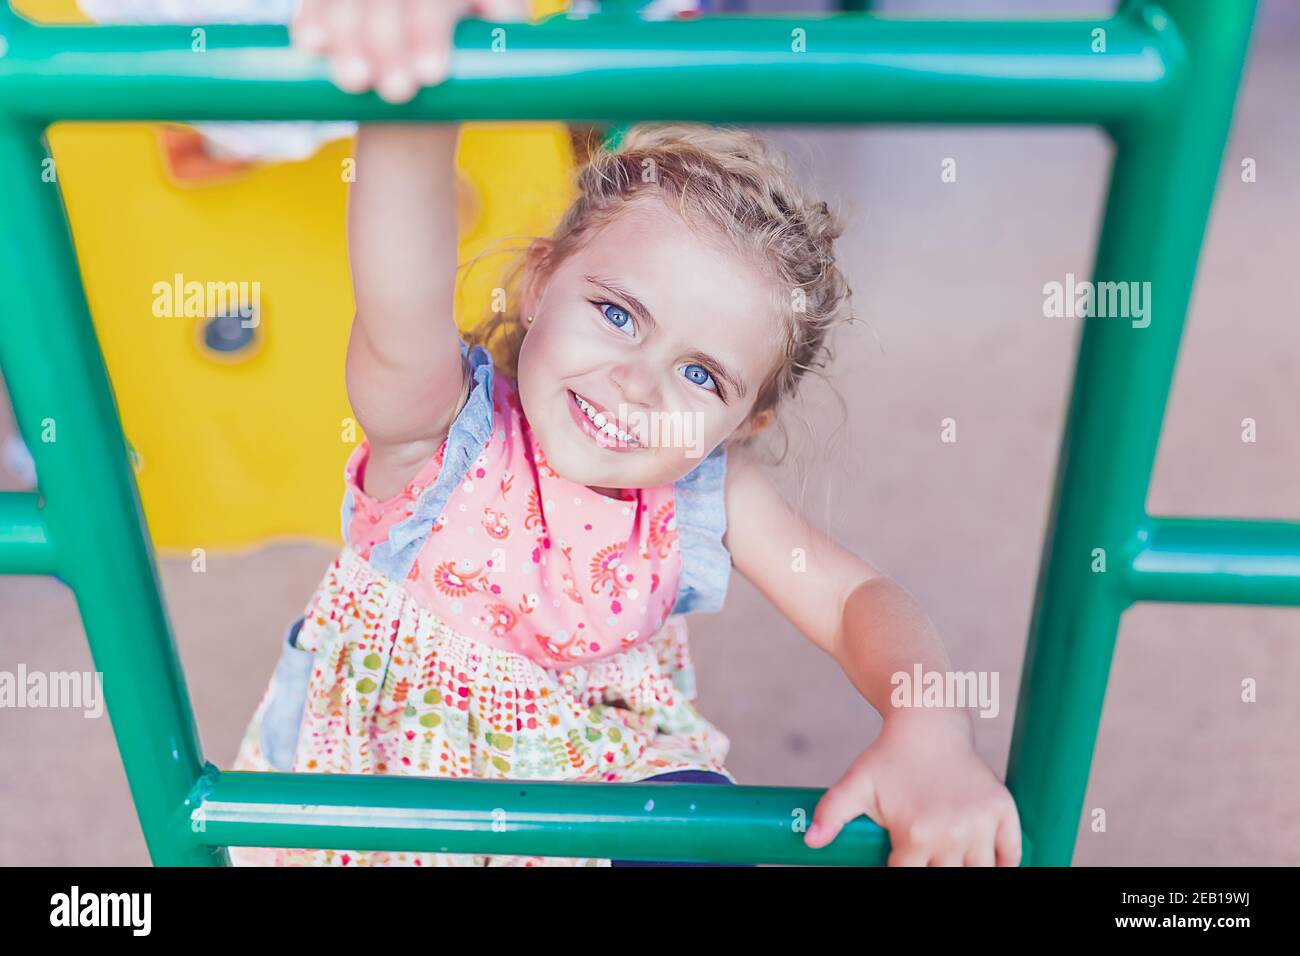 Vorschulmädchen mit großen blauen Augen spielen auf einem öffentlichen Spielplatz. Stockfoto